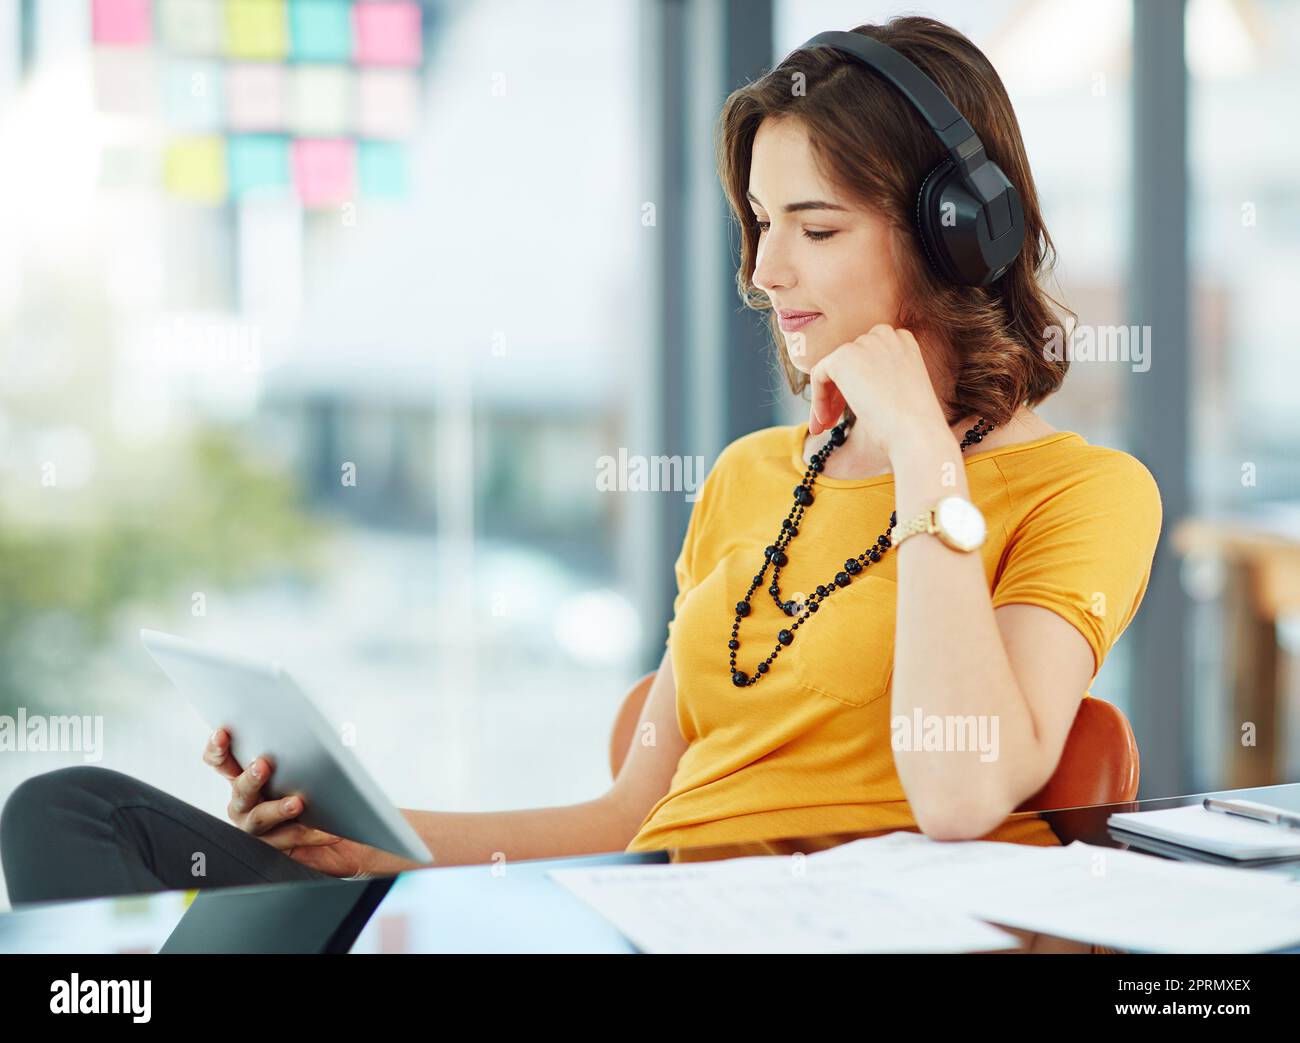 Guardare uno spettacolo nel tempo libero. Una giovane donna d'affari che guarda qualcosa sul suo tablet mentre si siede in ufficio. Foto Stock